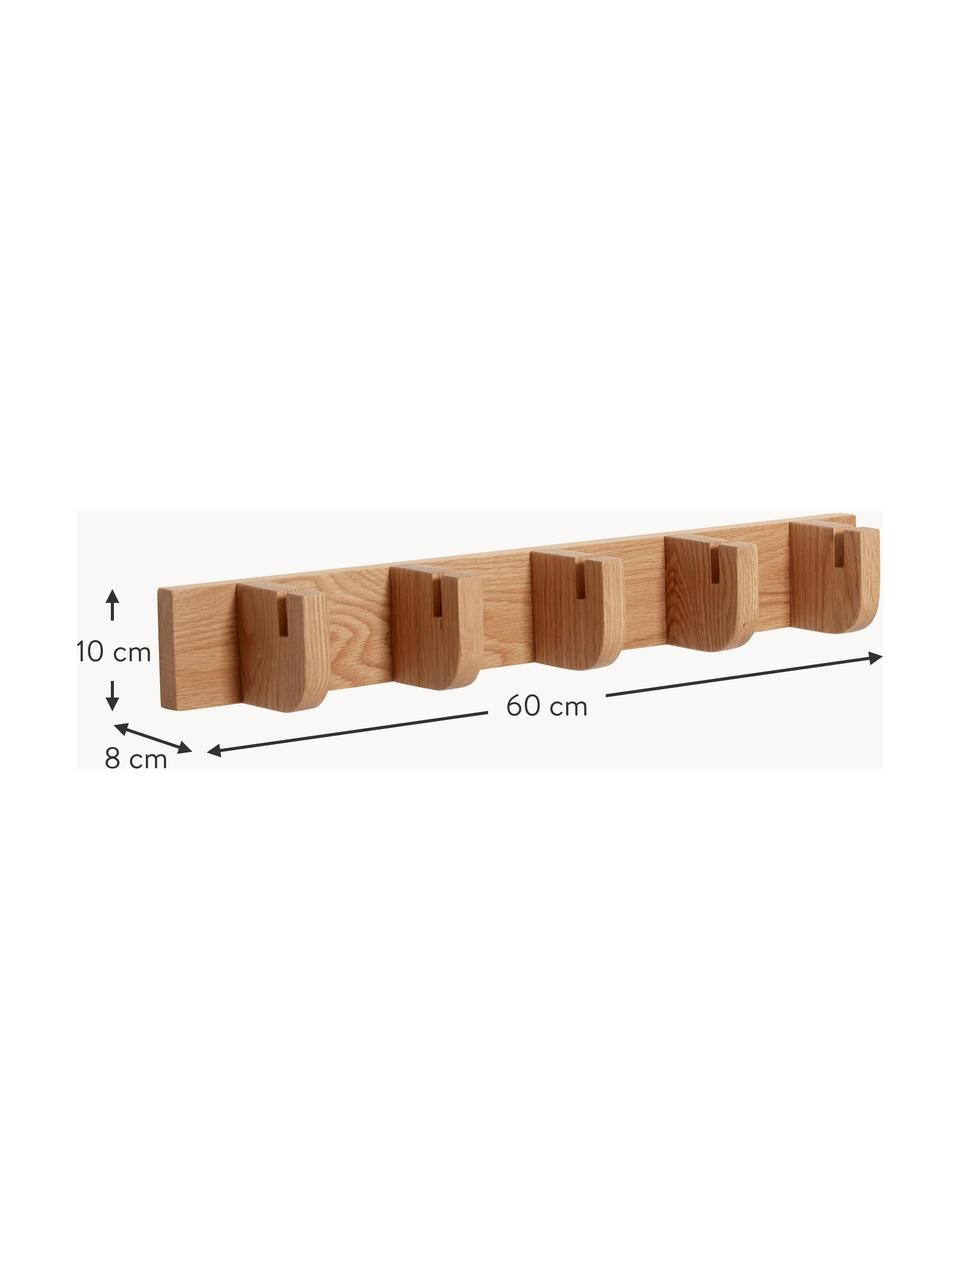 Wieszak ścienny z drewna dębowego Nomad, Drewno dębowe

Ten produkt jest wykonany z drewna pochodzącego ze zrównoważonych upraw, które posiada certyfikat FSC®, Drewno dębowe, S 60 cm